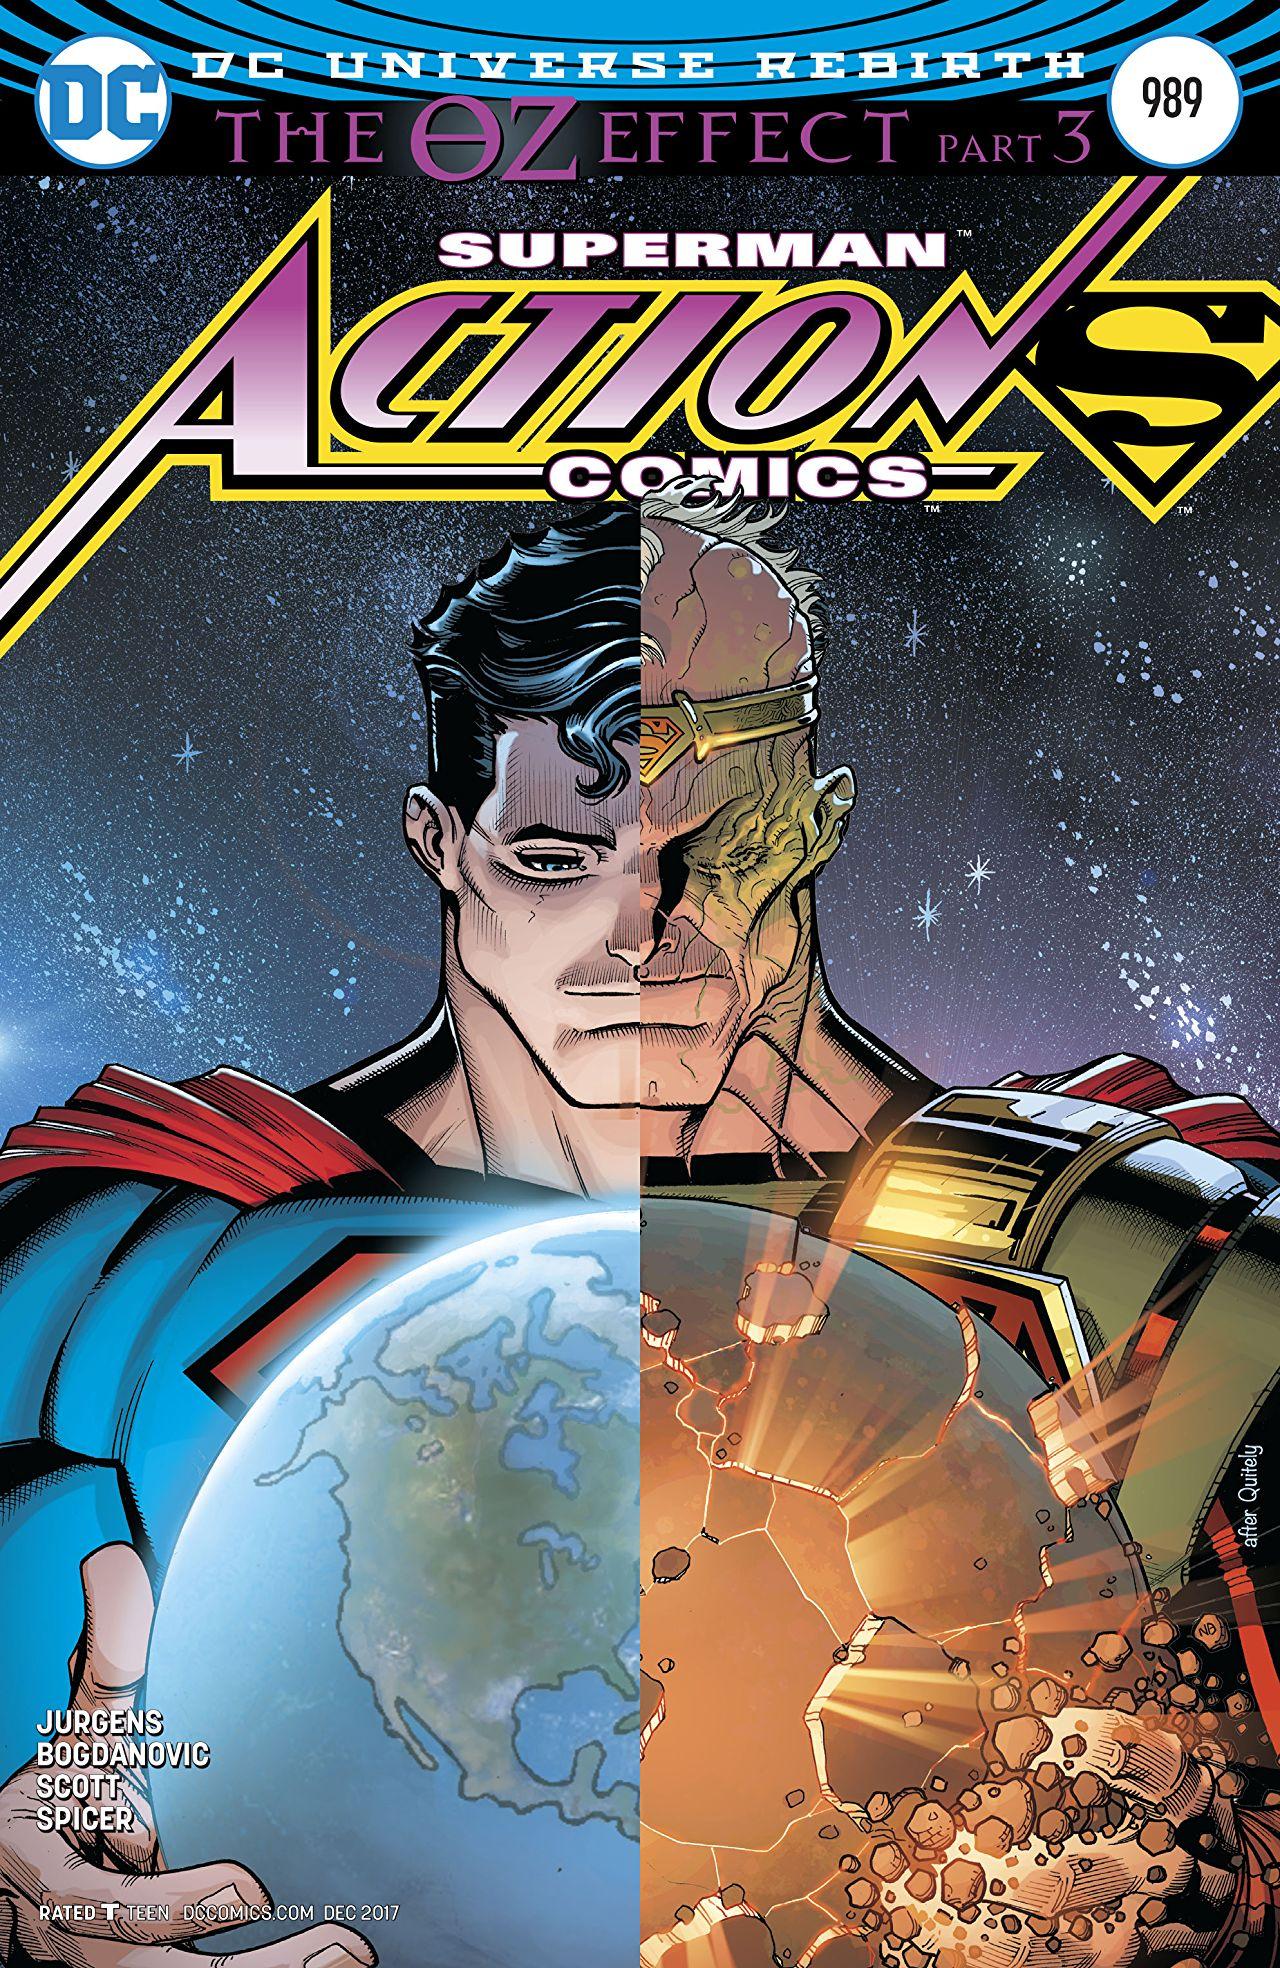 Action Comics Vol. 1 #989